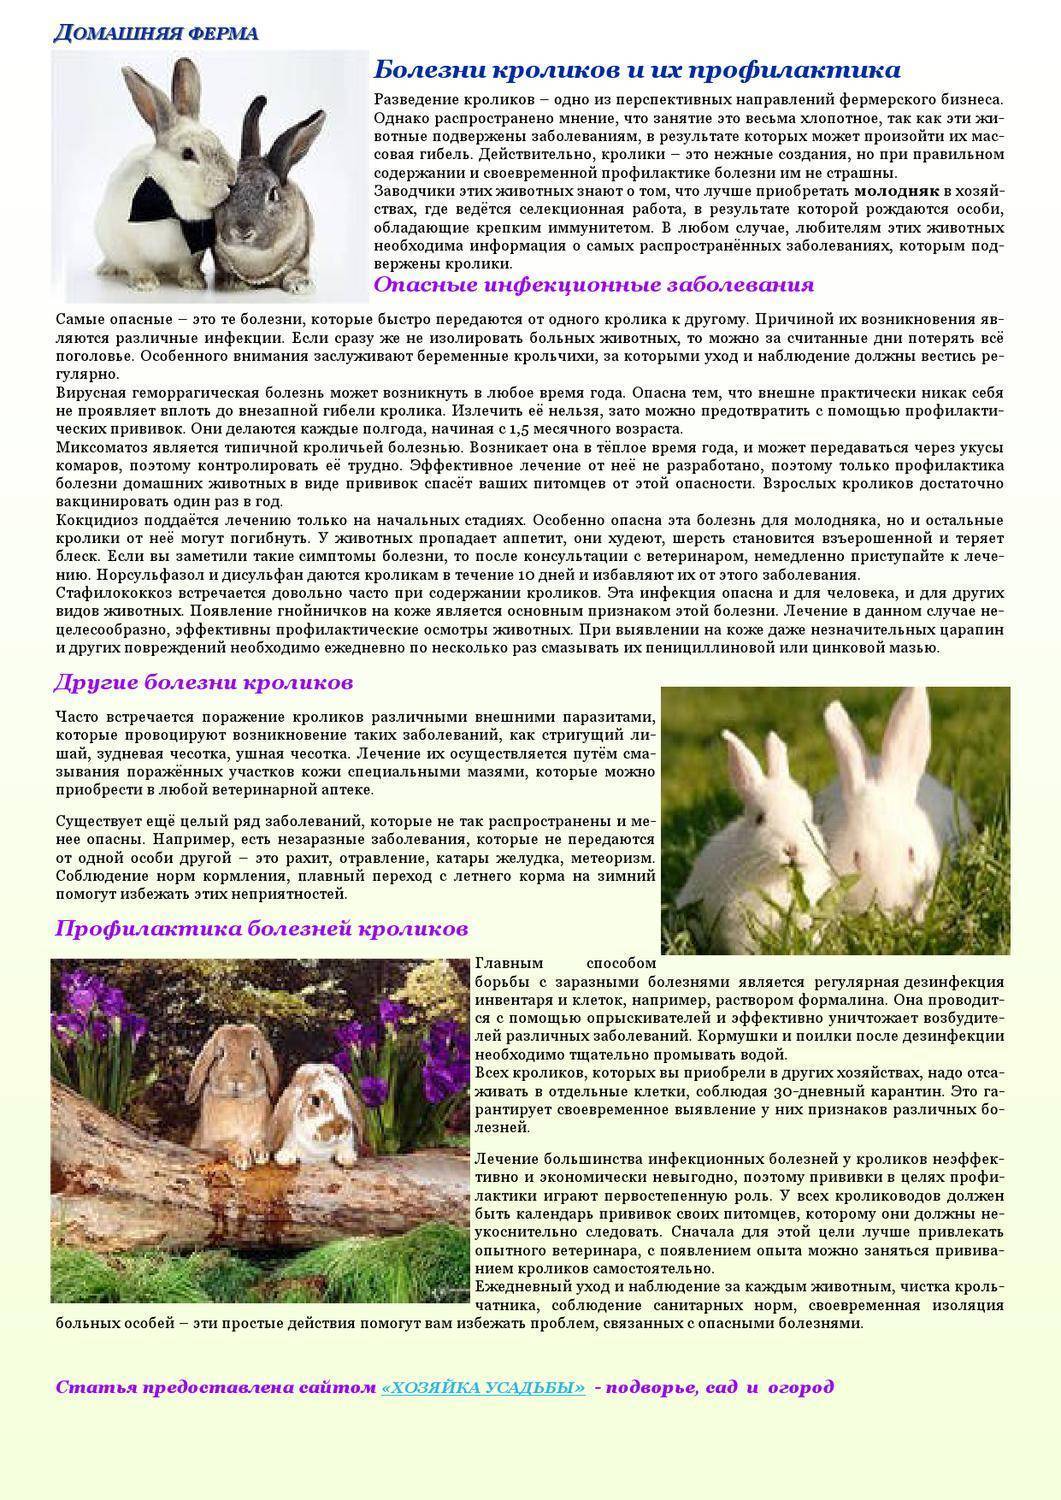 Миксоматоз у кроликов: фото, симптомы и лечение болезни